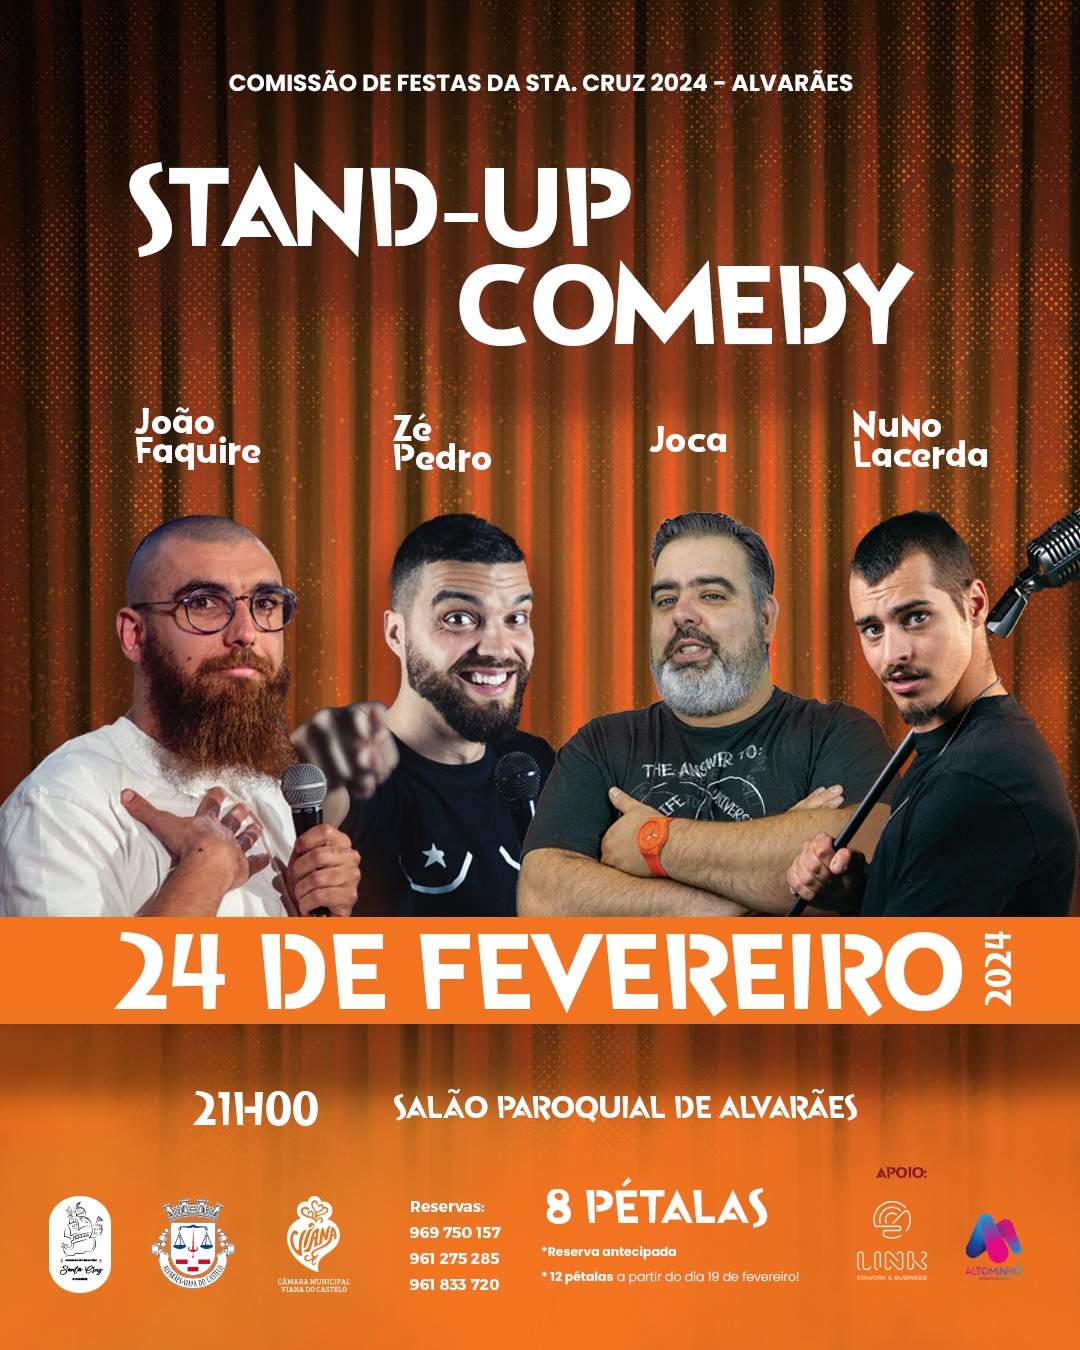 Stand-up Comedy Alvarães